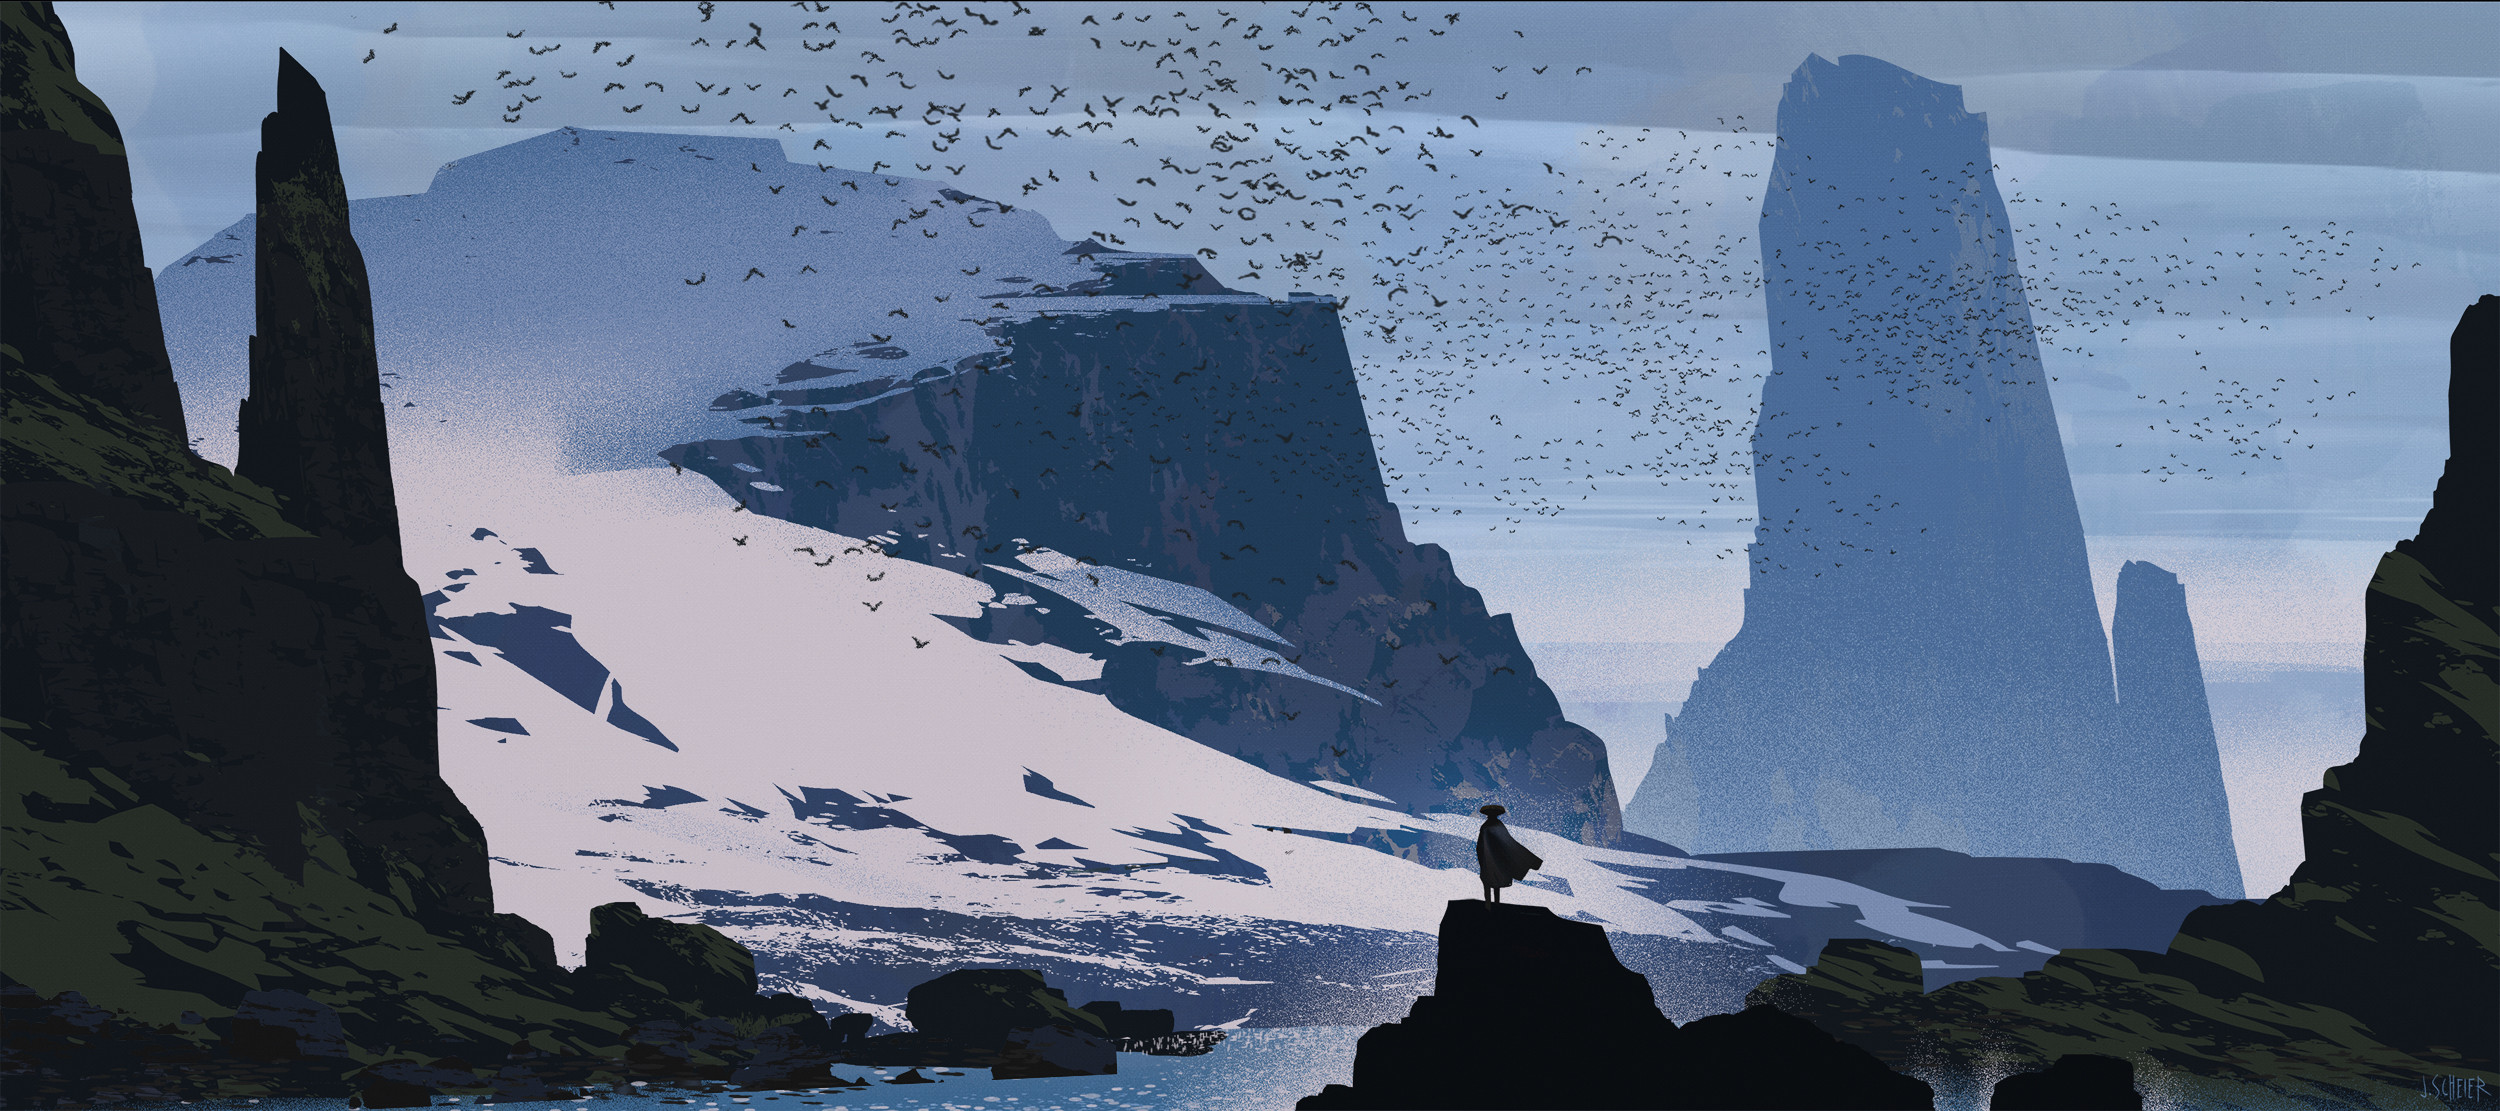 Jason Scheier Digital Art Artwork Illustration Landscape Nature Mountains Birds Animals Snow Water 2500x1111